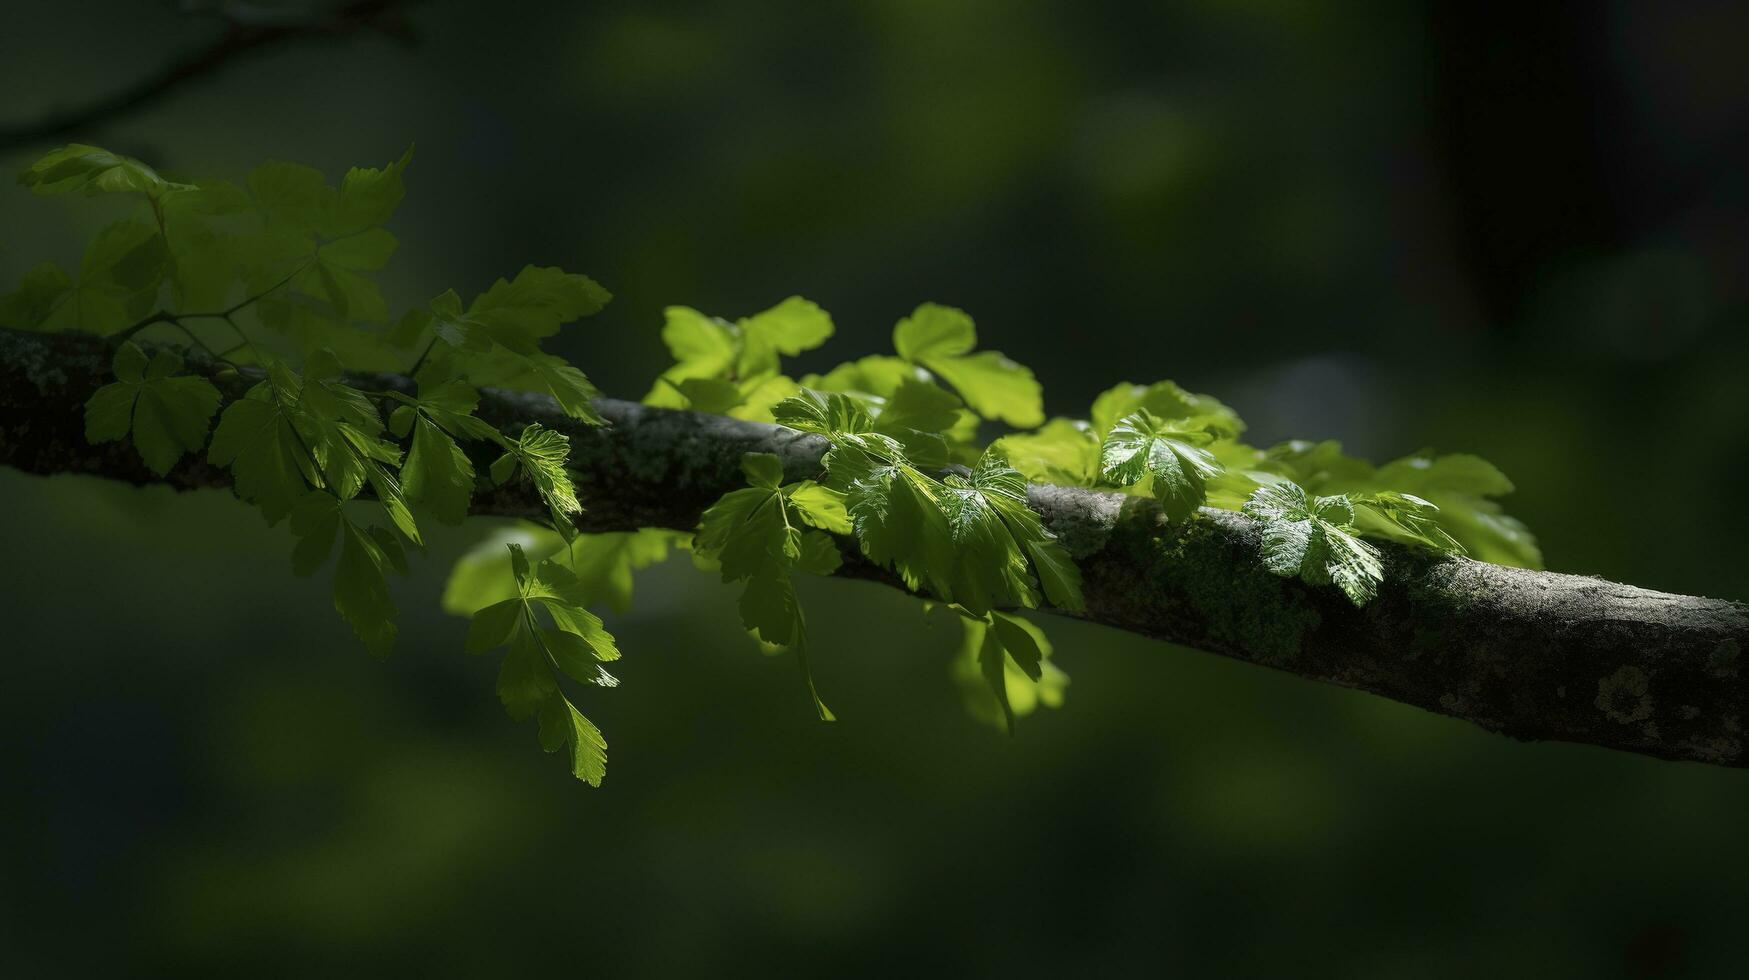 Terre journée et monde environnement jour, printemps, tropical arbre feuilles et branche avec magnifique vert forêt arrière-plan, produire ai photo